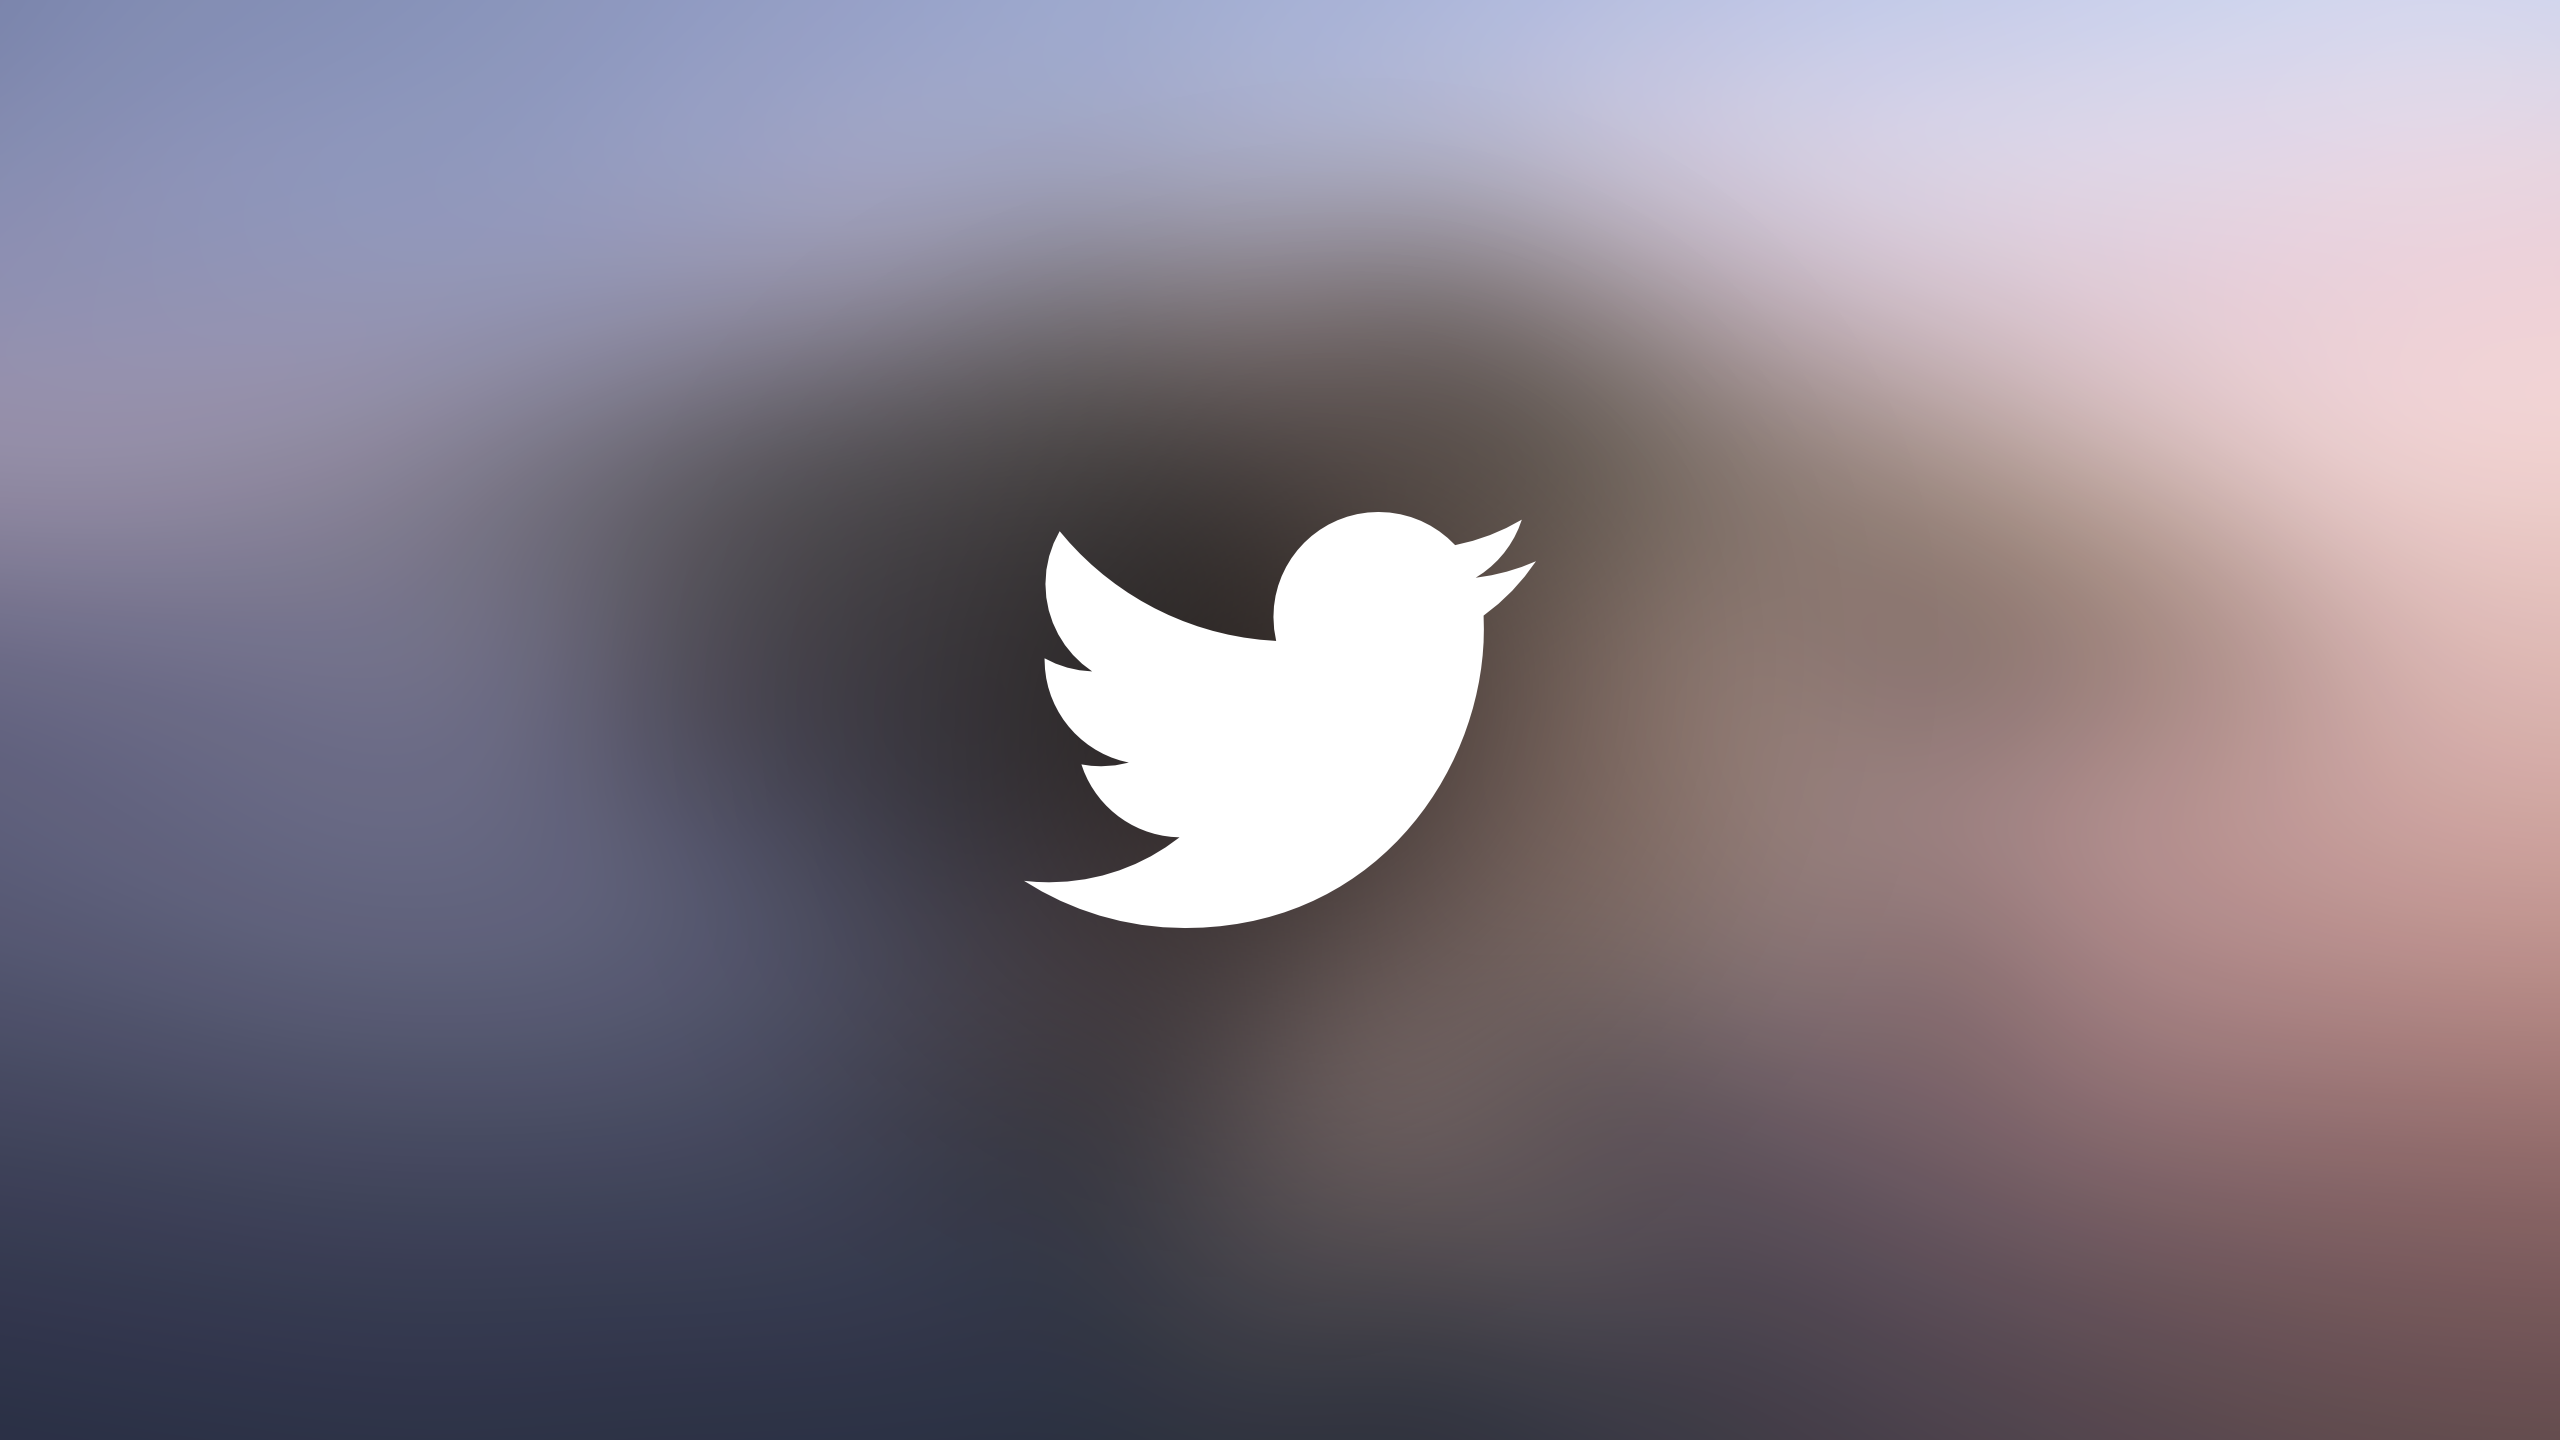 متجر التطبيقات 18 ديسمبر 2020
Twitter يركز على الصوت في تجربة جديدة: تقديم المساحات